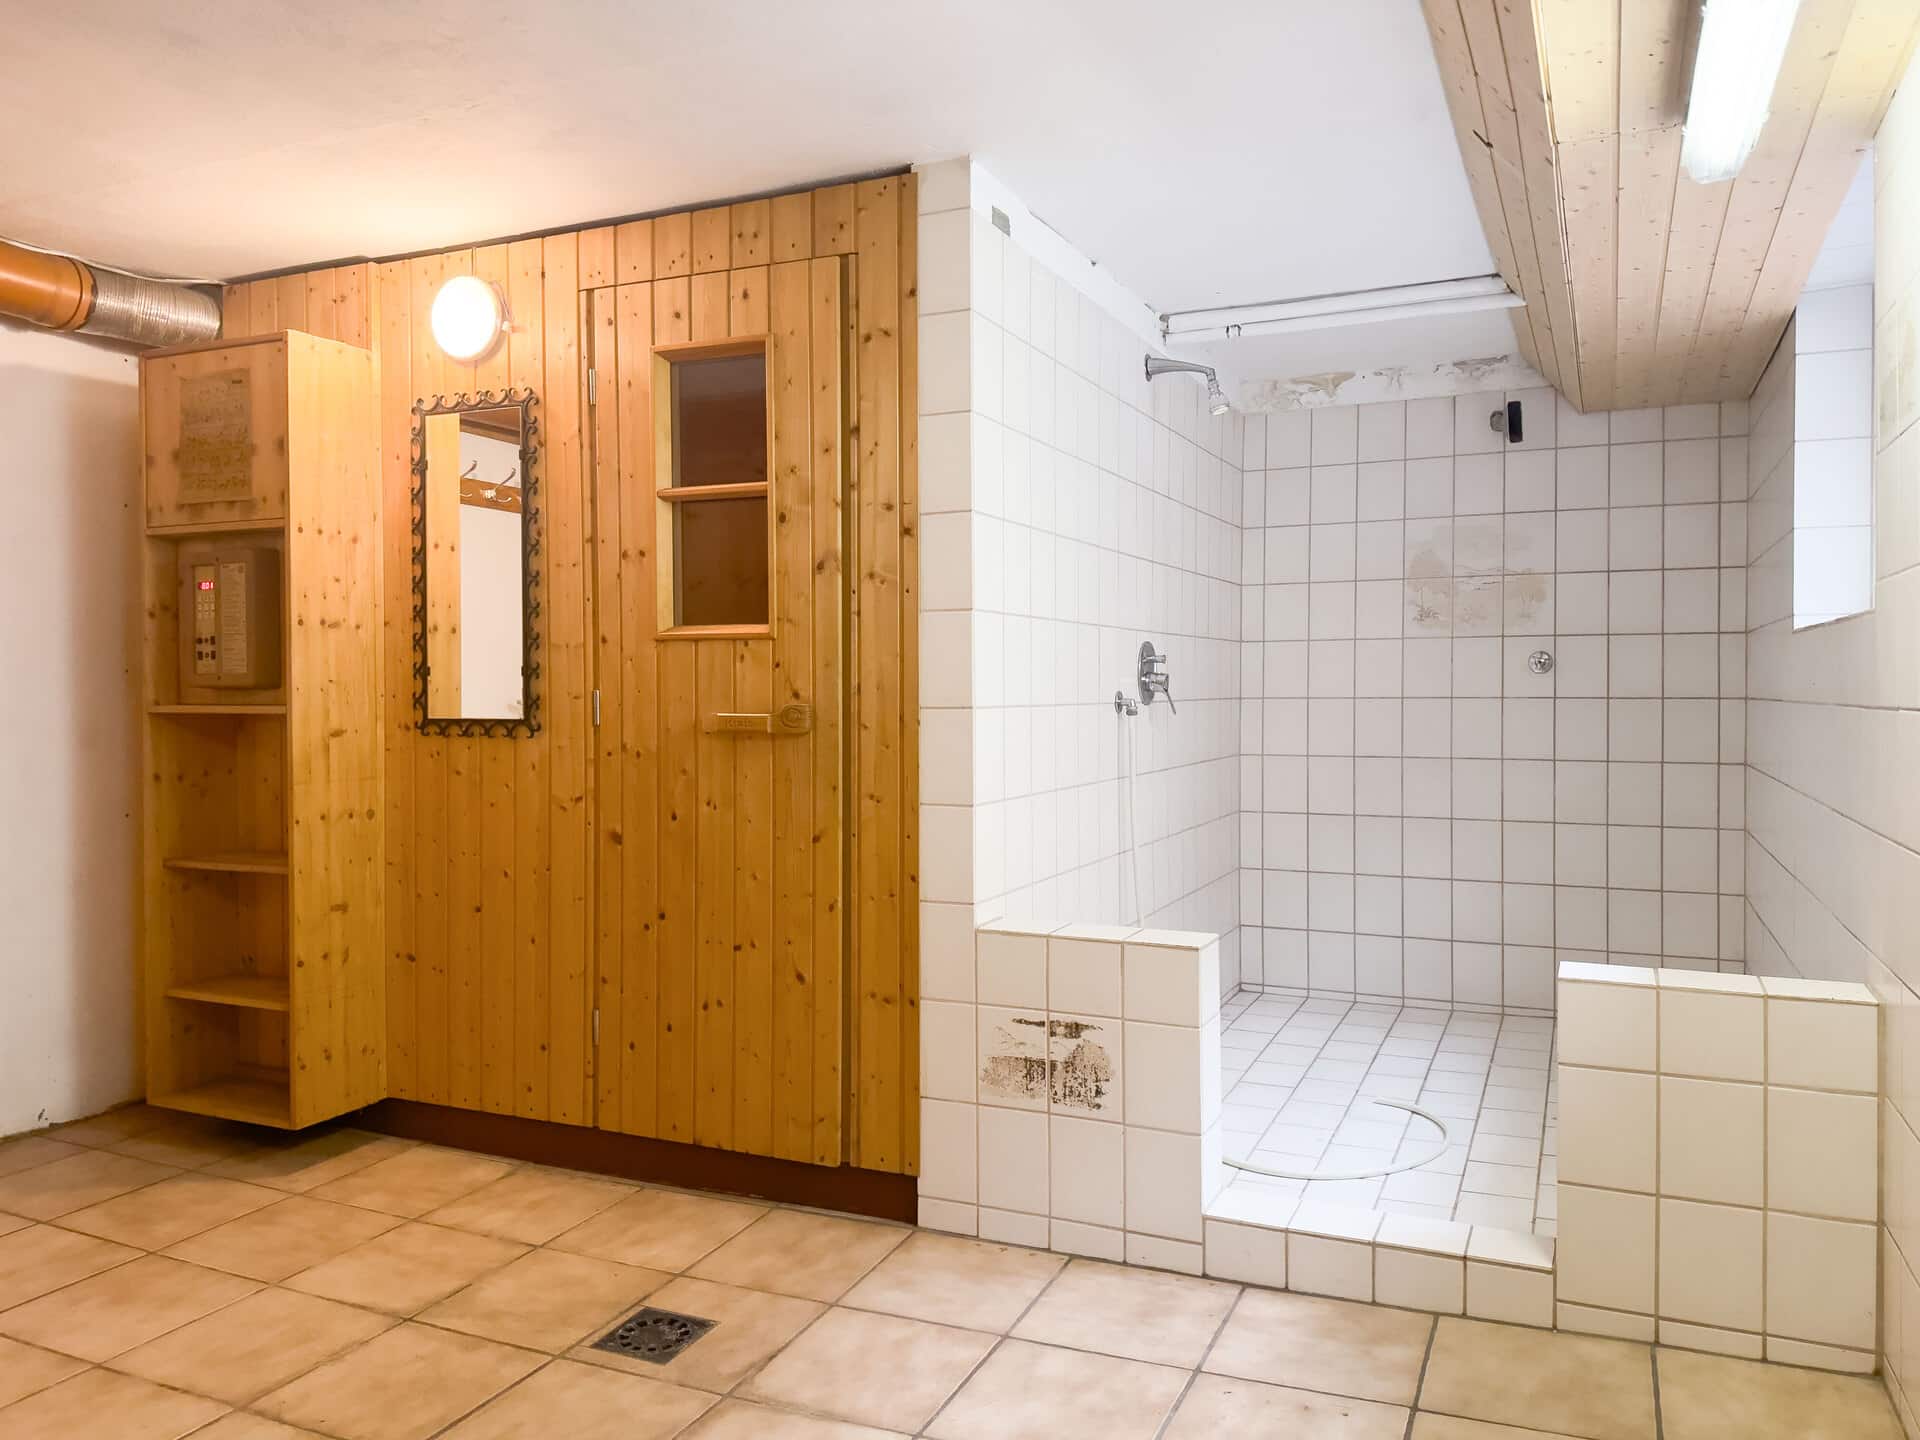 Ihr neues Zuhause? Großzügiges freistehendes Wohnhaus auf großem Grundstück in Ettlingen - Sauna